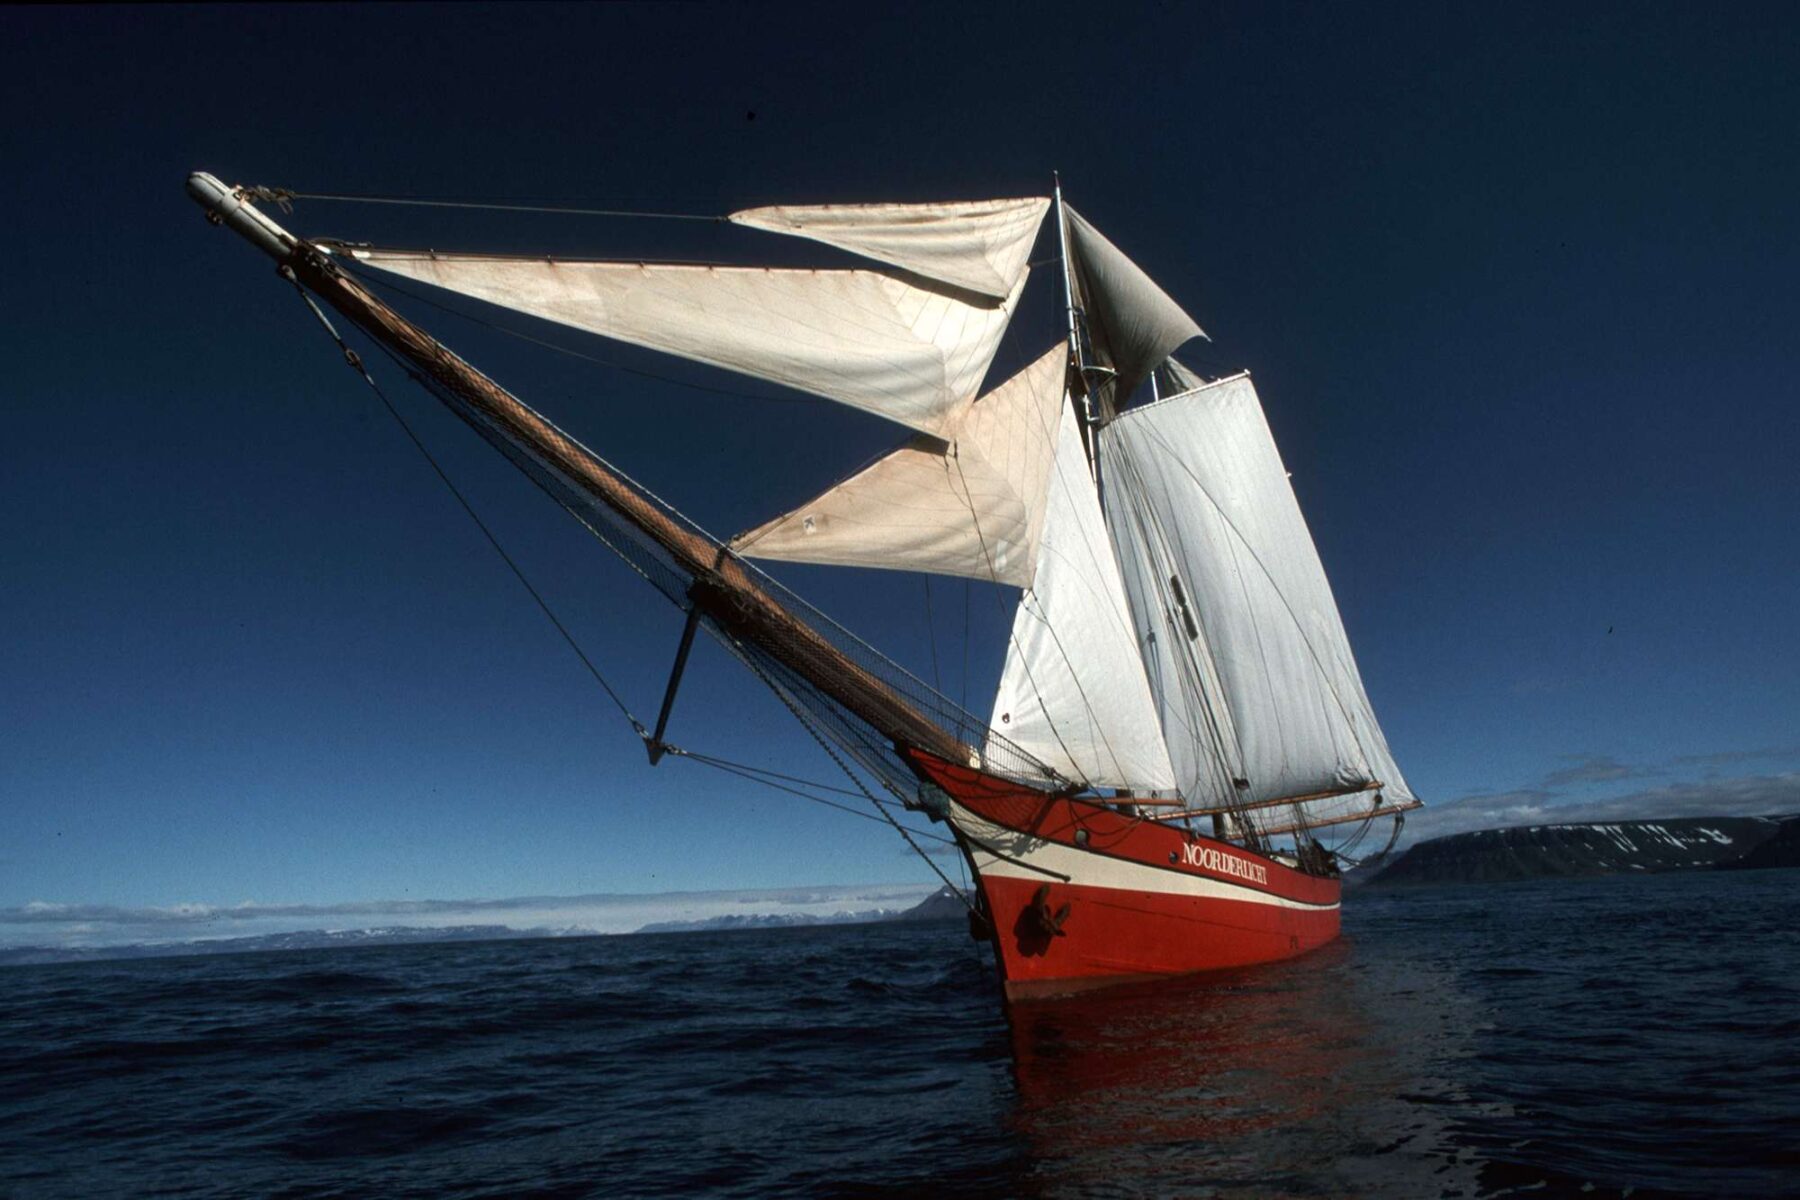 noorderlicht sailing vessel oce